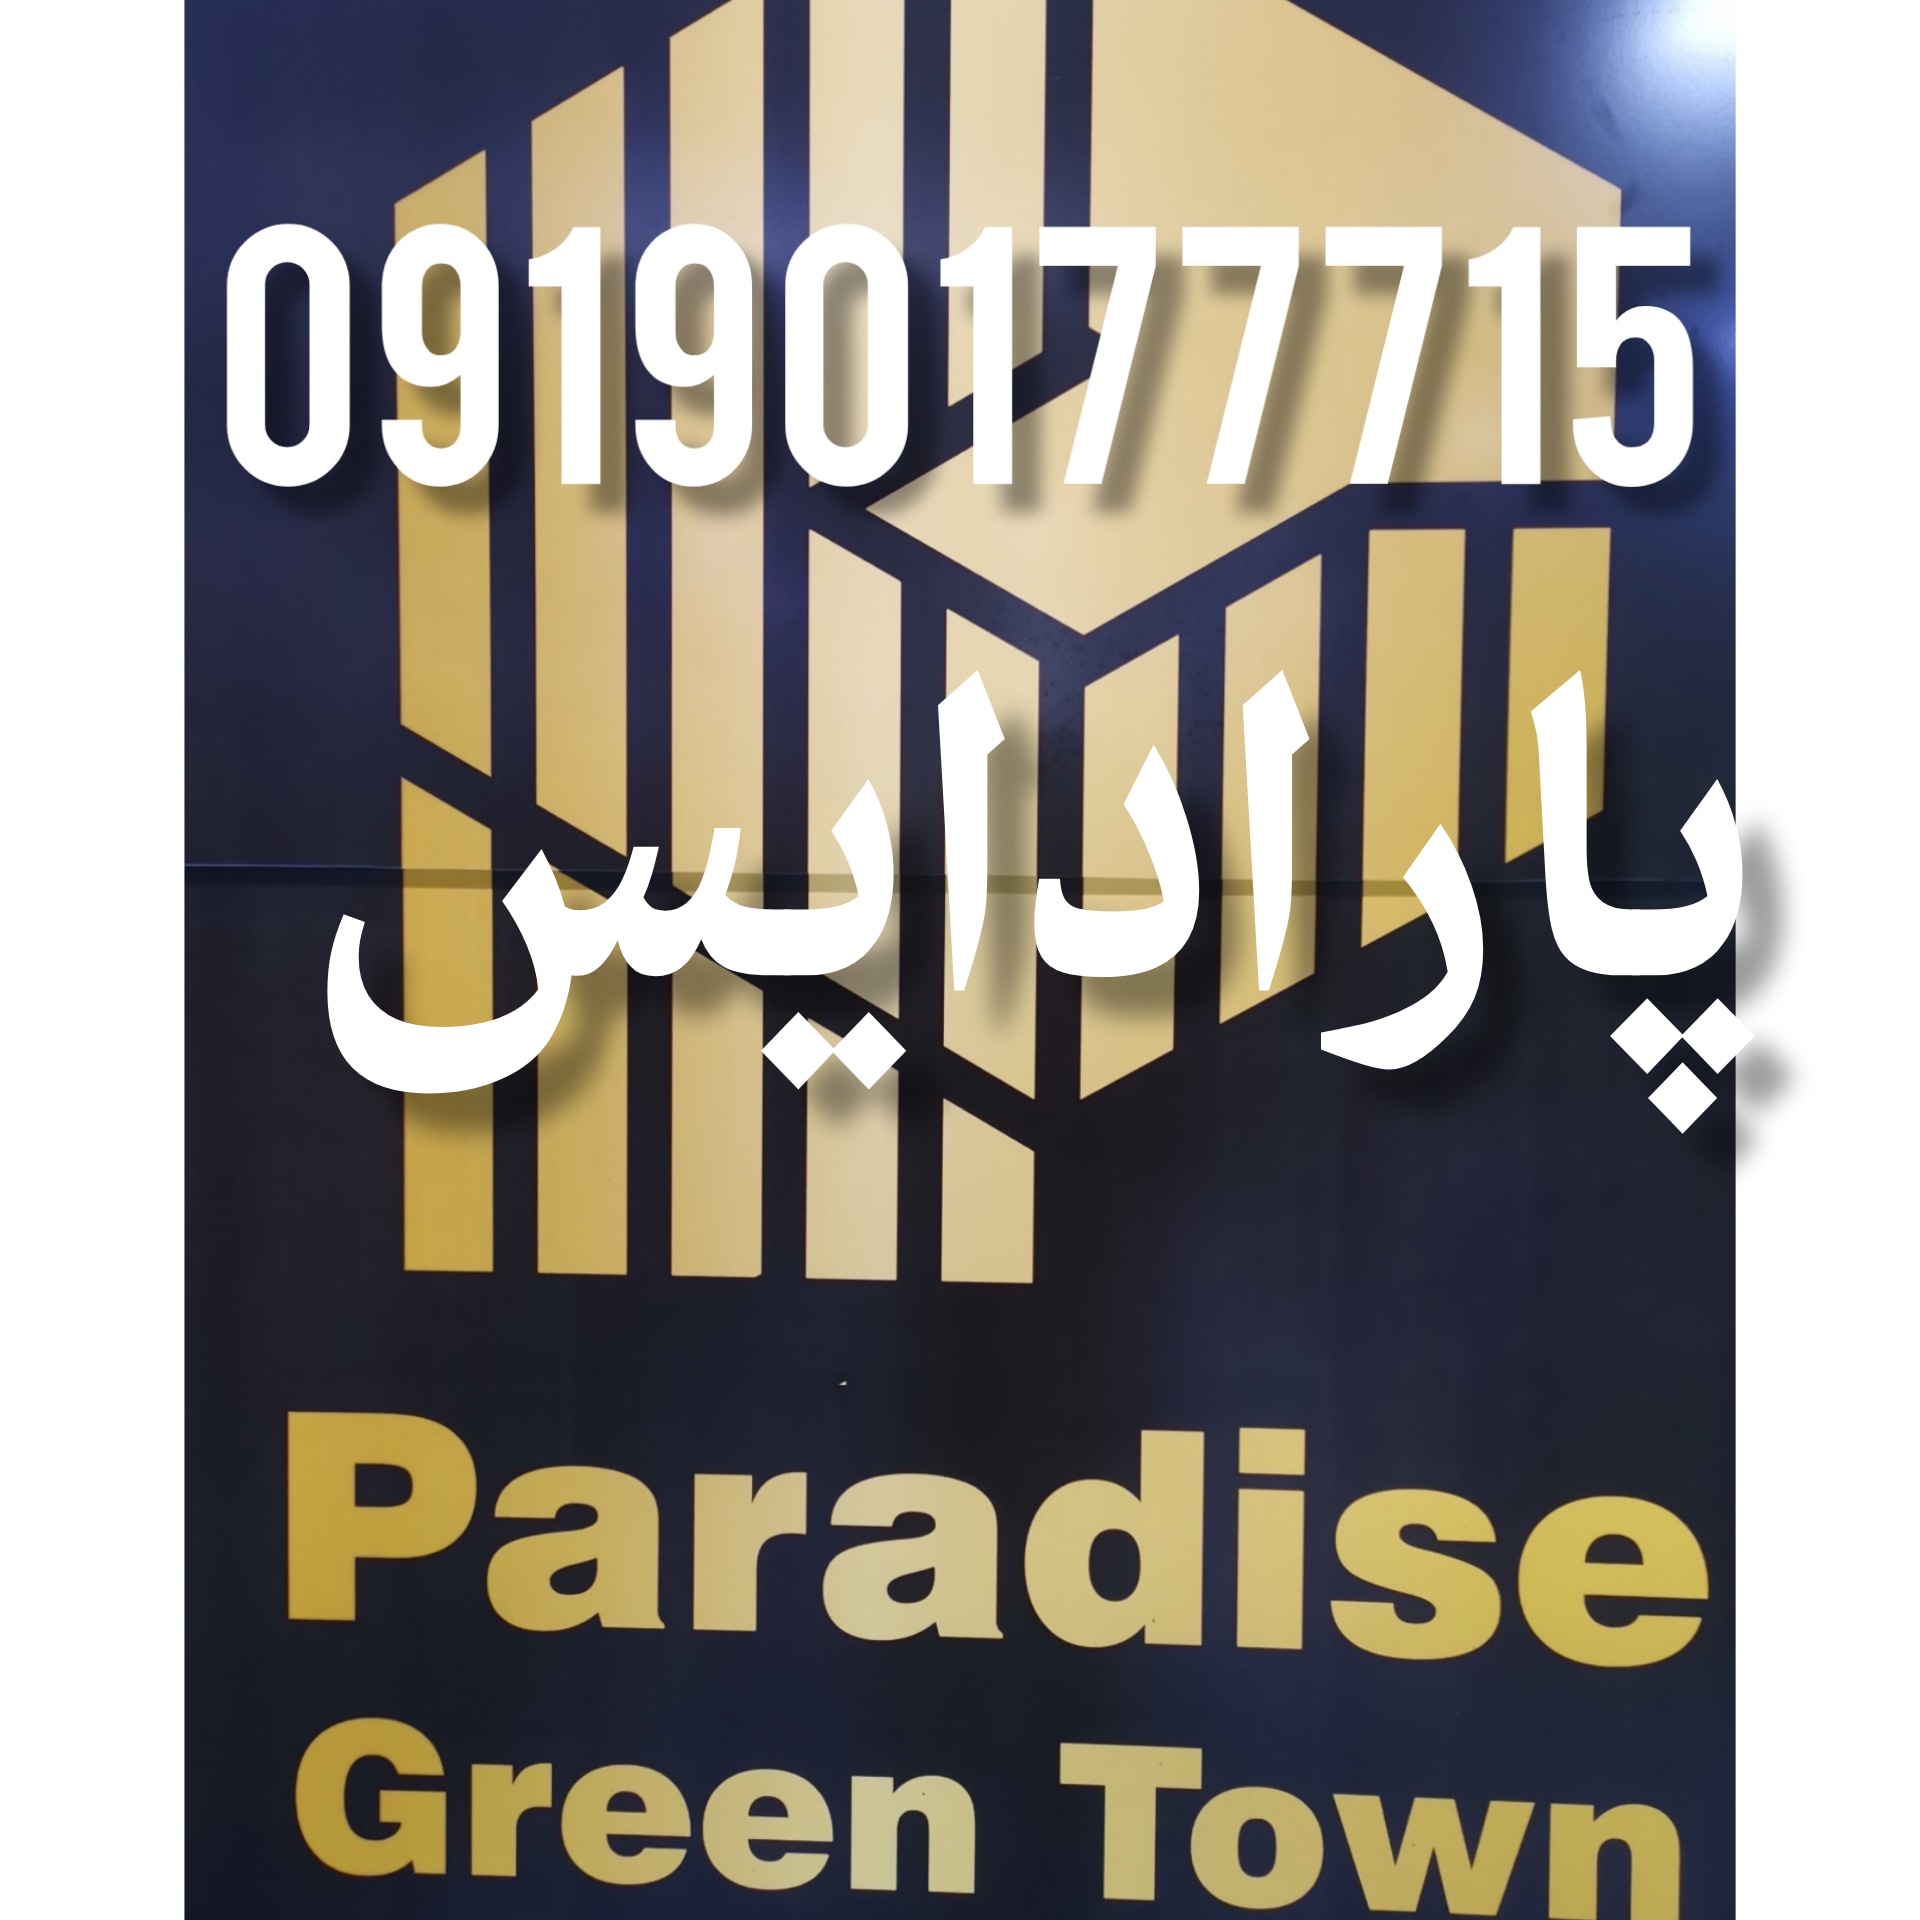 09190177715تلفن دفتر پروژه شهرک سبز پارادایس